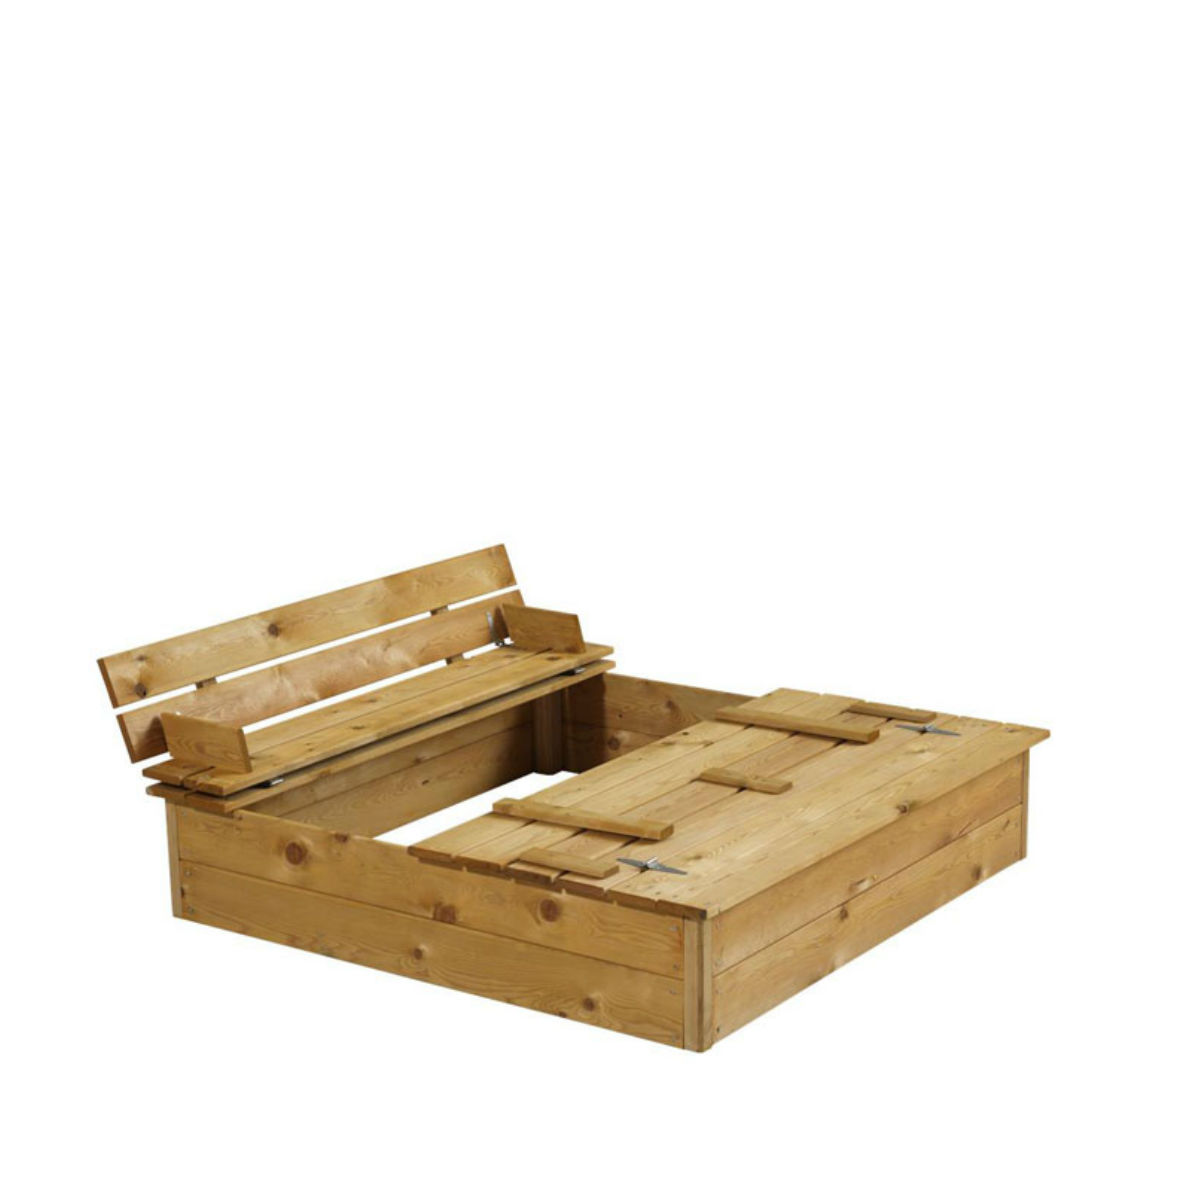 Sandlådor | Sandlåda 120 med bänk och lock